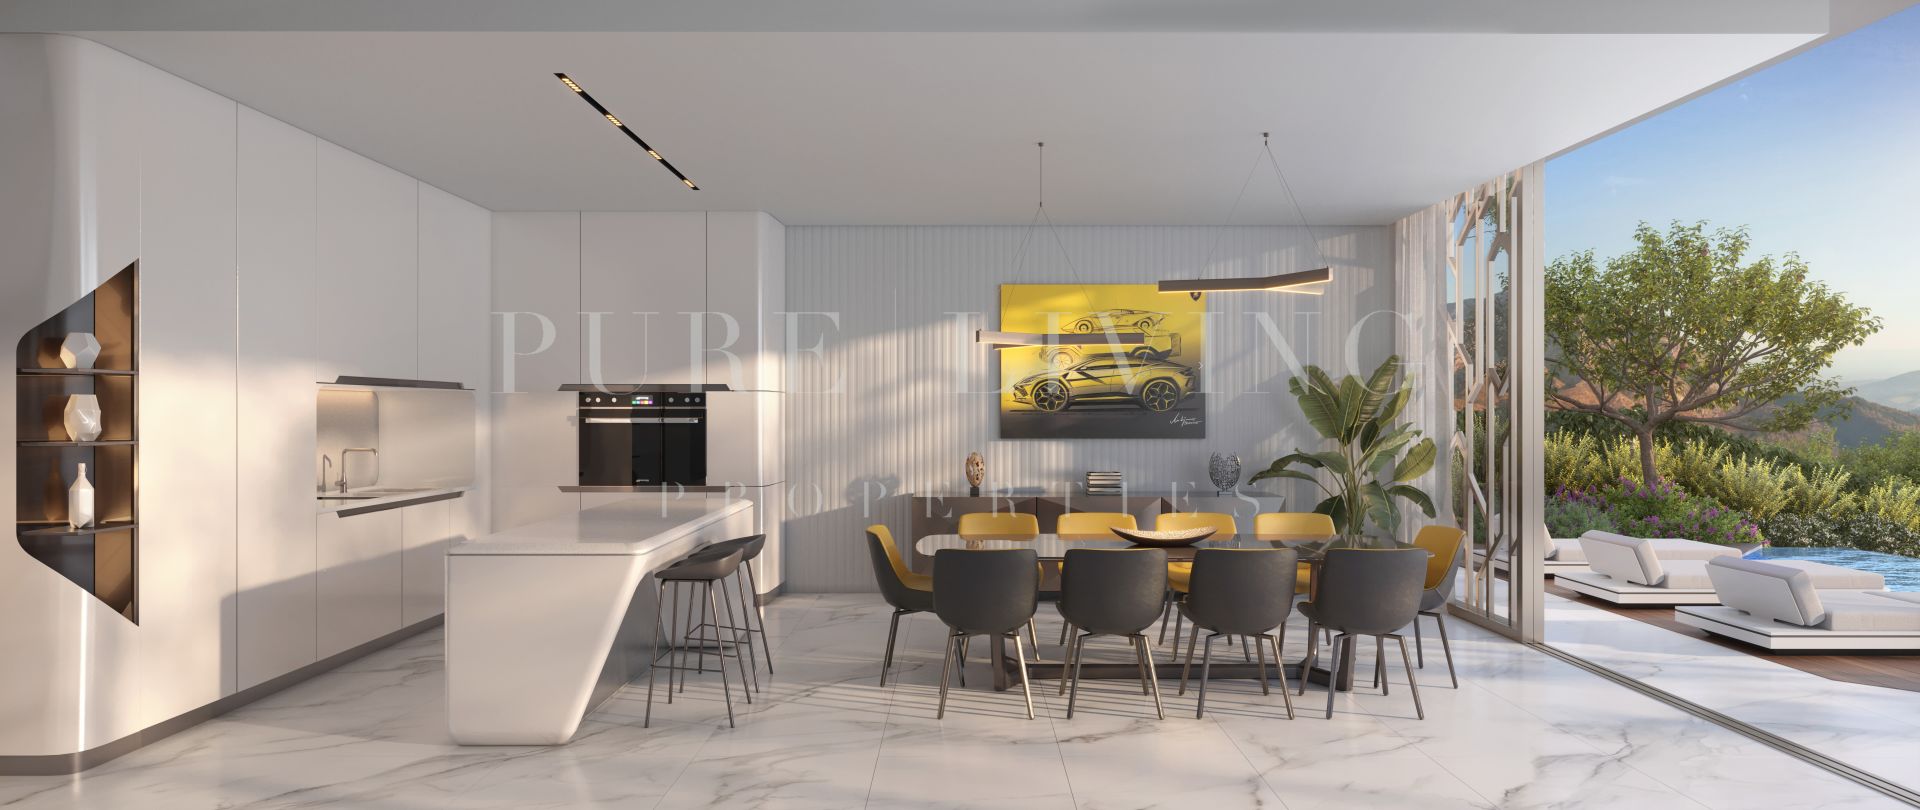 Incroyable projet de villa de quatre chambres à coucher dans une communauté fermée exclusive conçue par Lamborghini